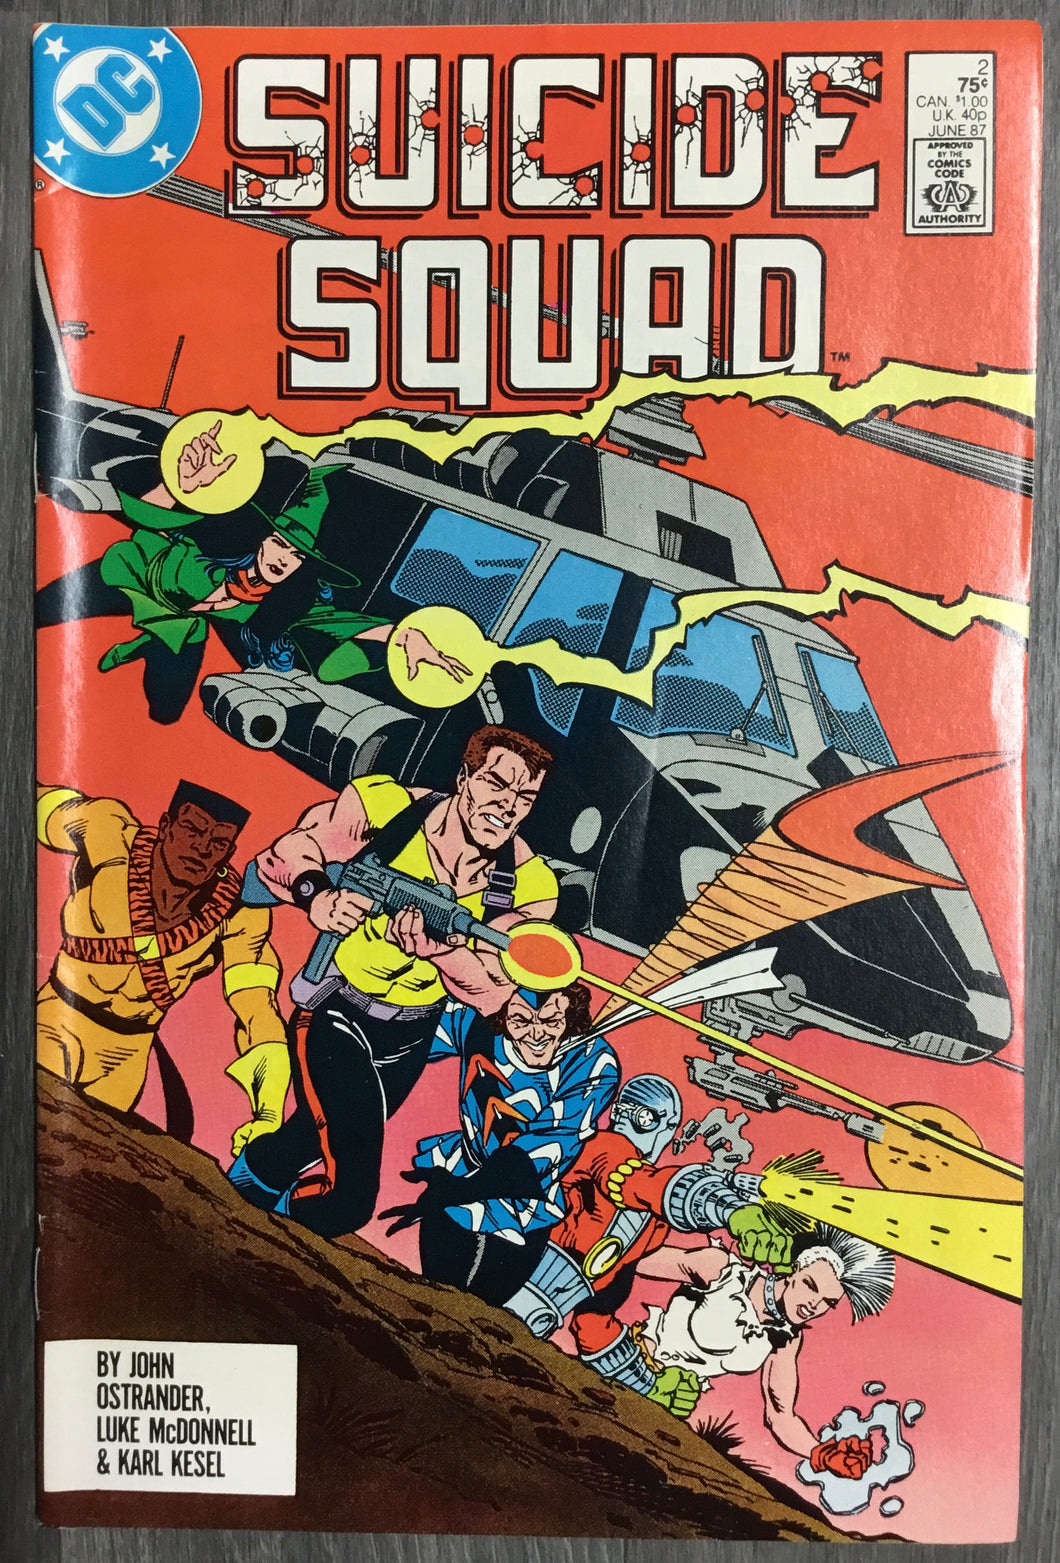 Suicide Squad No. #2 1987 DC Comics